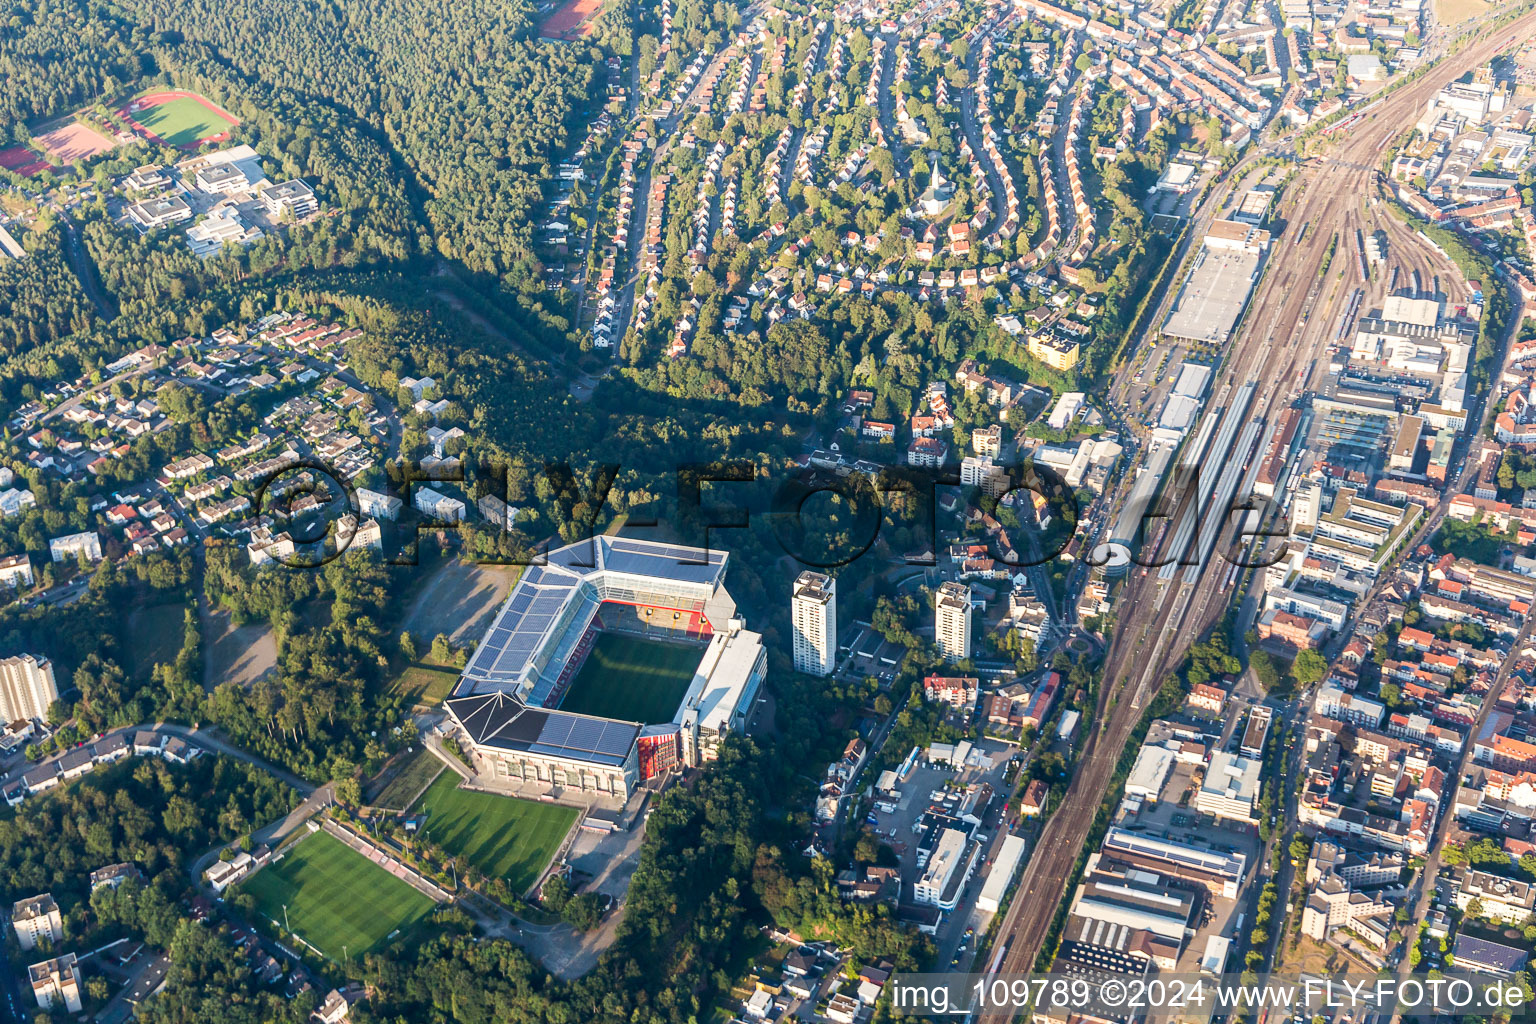 Fritz-Walter-Stadion in Kaiserslautern im Bundesland Rheinland-Pfalz, Deutschland